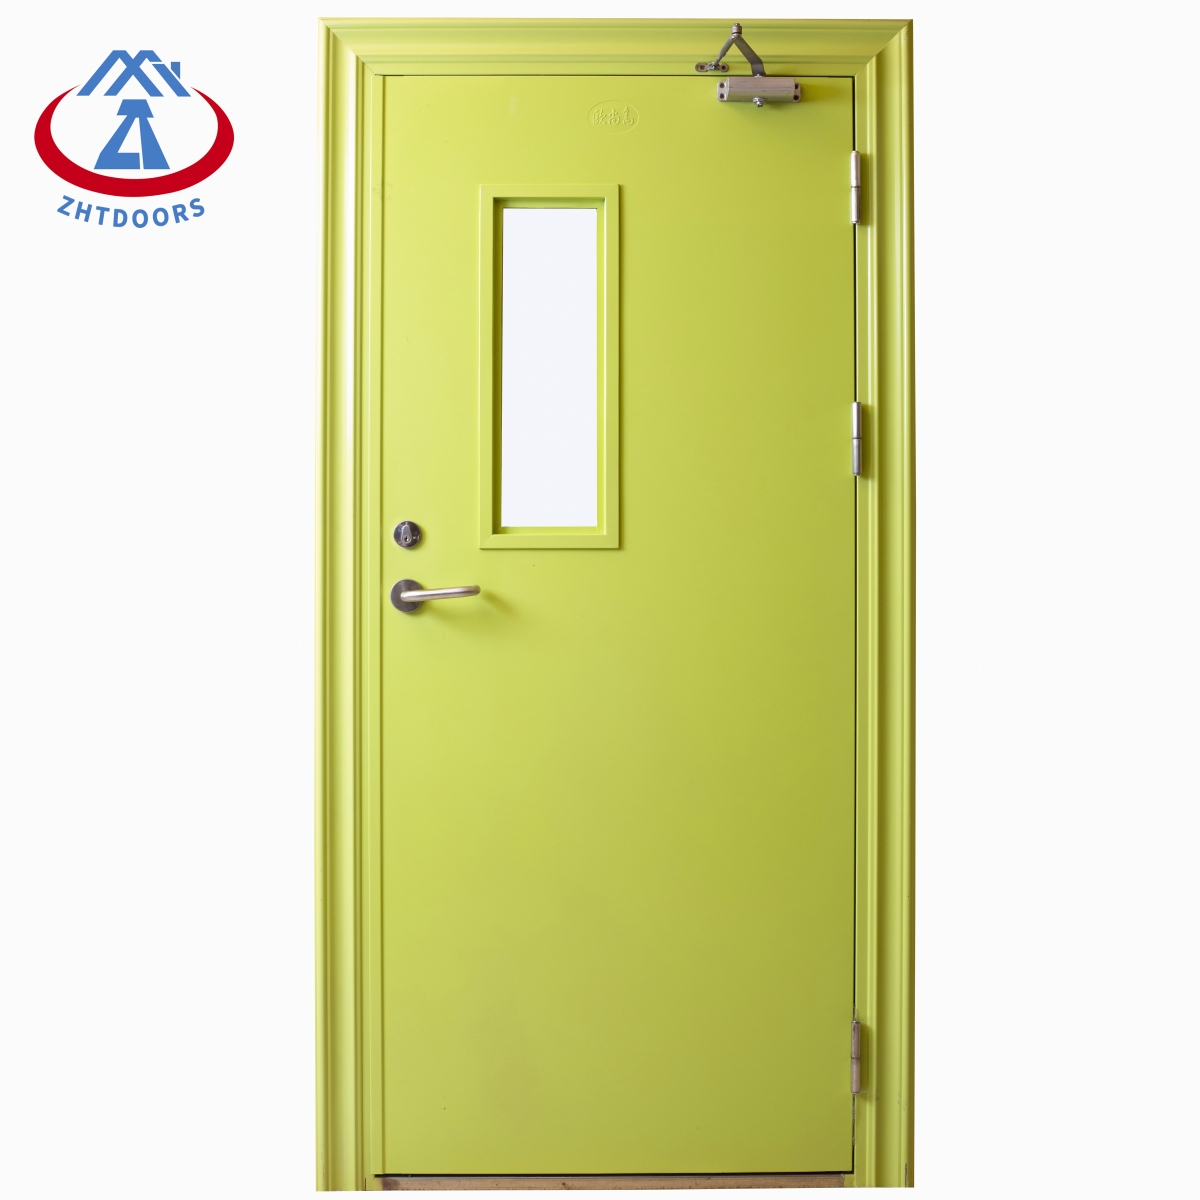 Դեկորատիվ հակահրդեհային դռներ-ZTFIRE դուռ-Հրդեհային դուռ,հրդեհային դուռ,հրդեհային դուռ,հրդեհակայուն դուռ,պողպատե դուռ,մետաղյա դուռ,ելքի դուռ